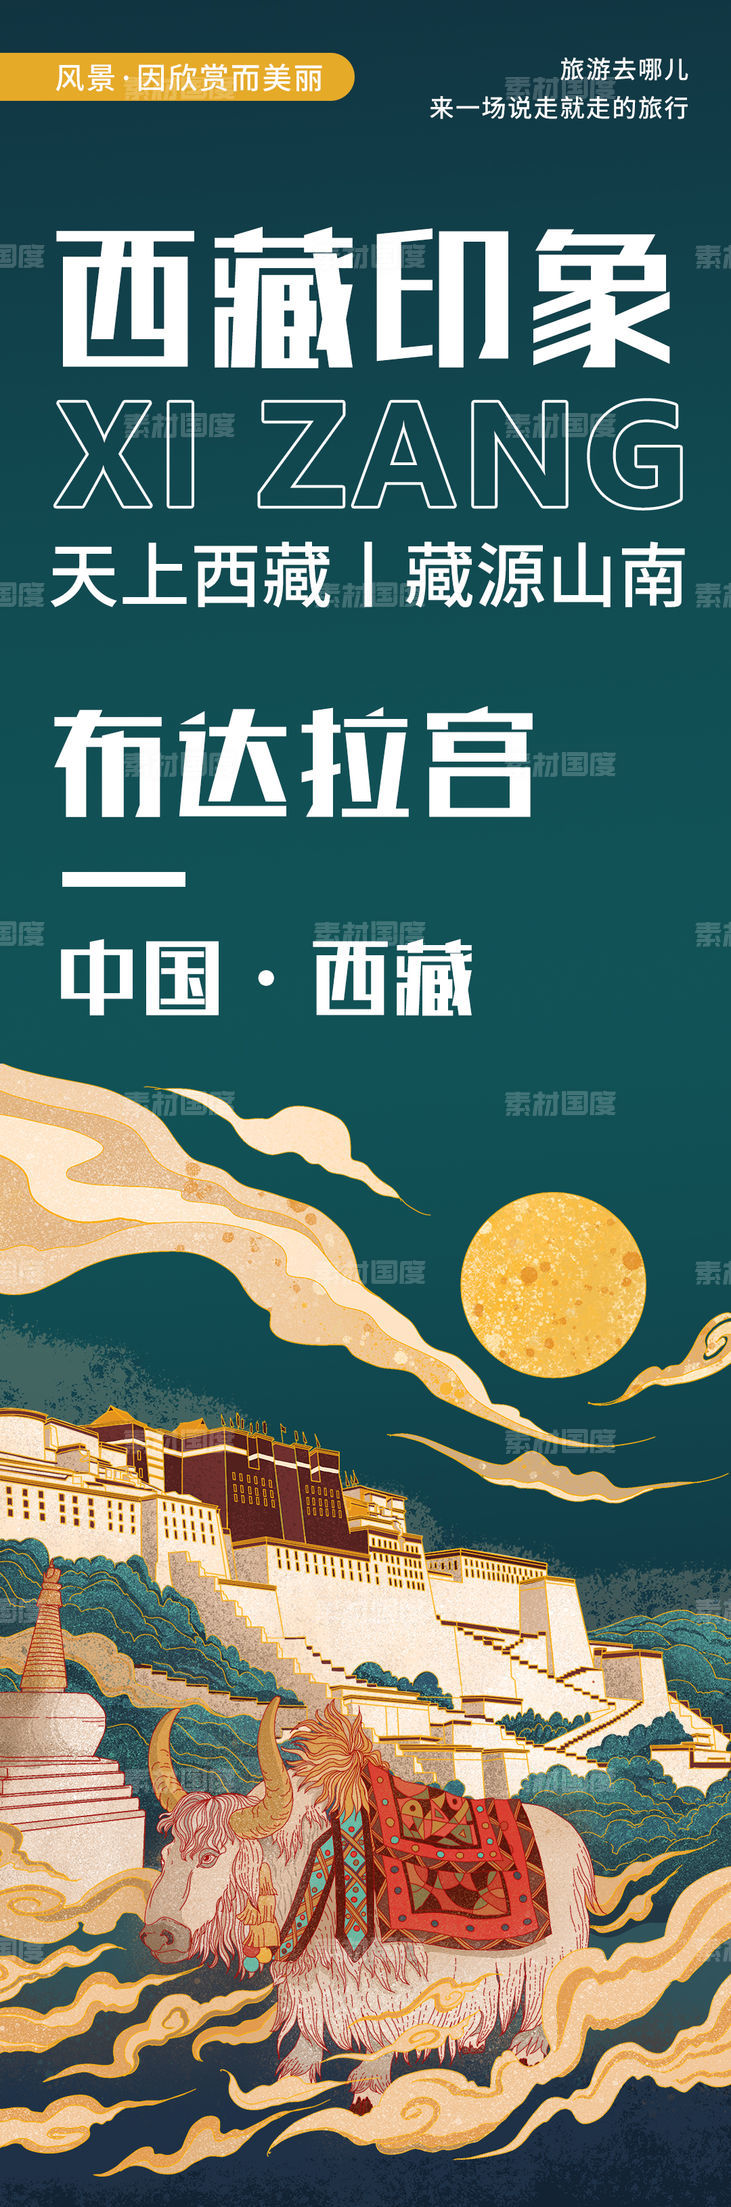 西藏印象布达拉宫旅游海报